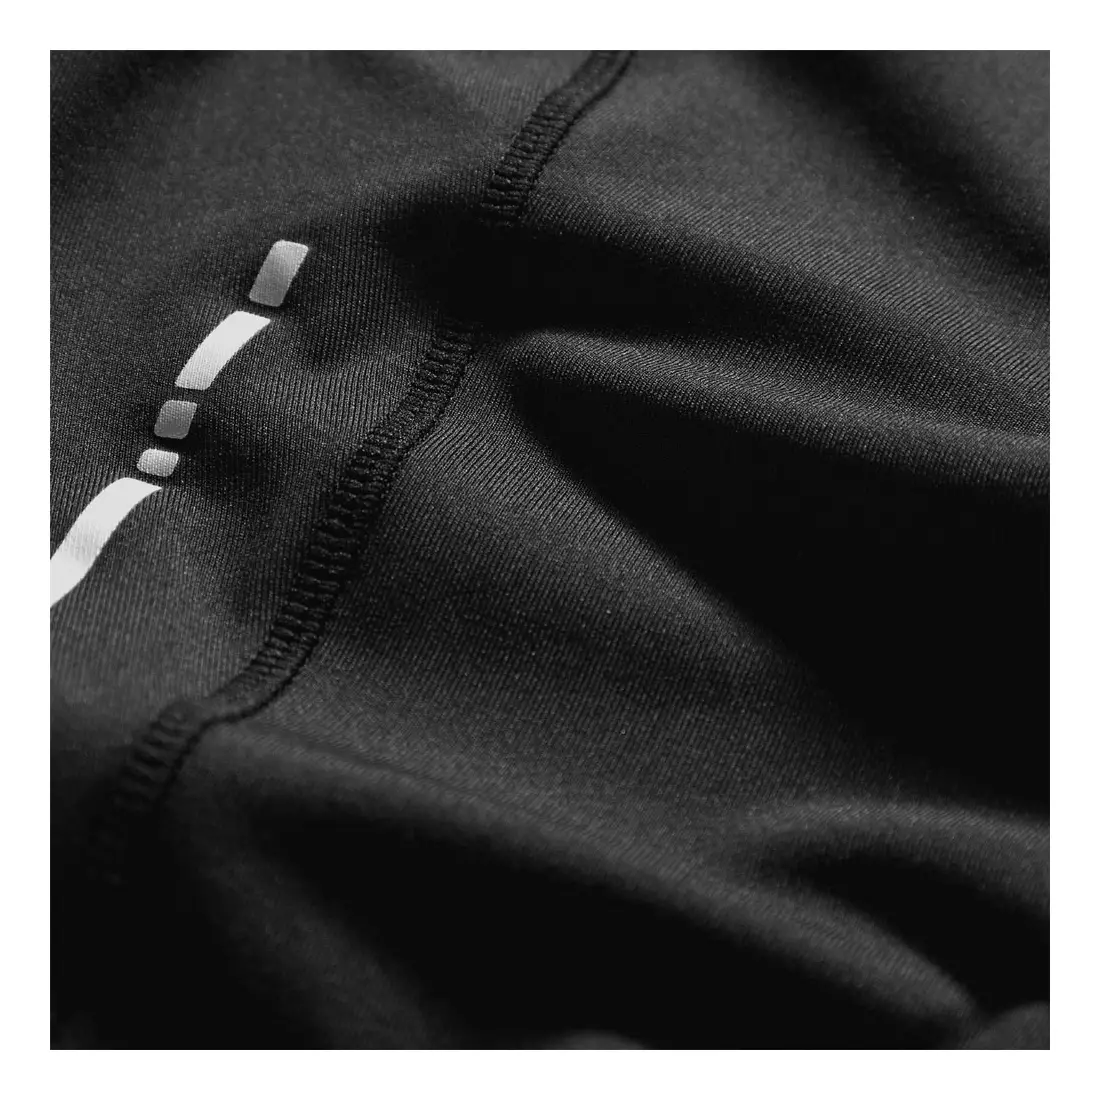 ASICS 110430-0904 - dámske 3/4 šortky KOLENÁ, farba: čierna